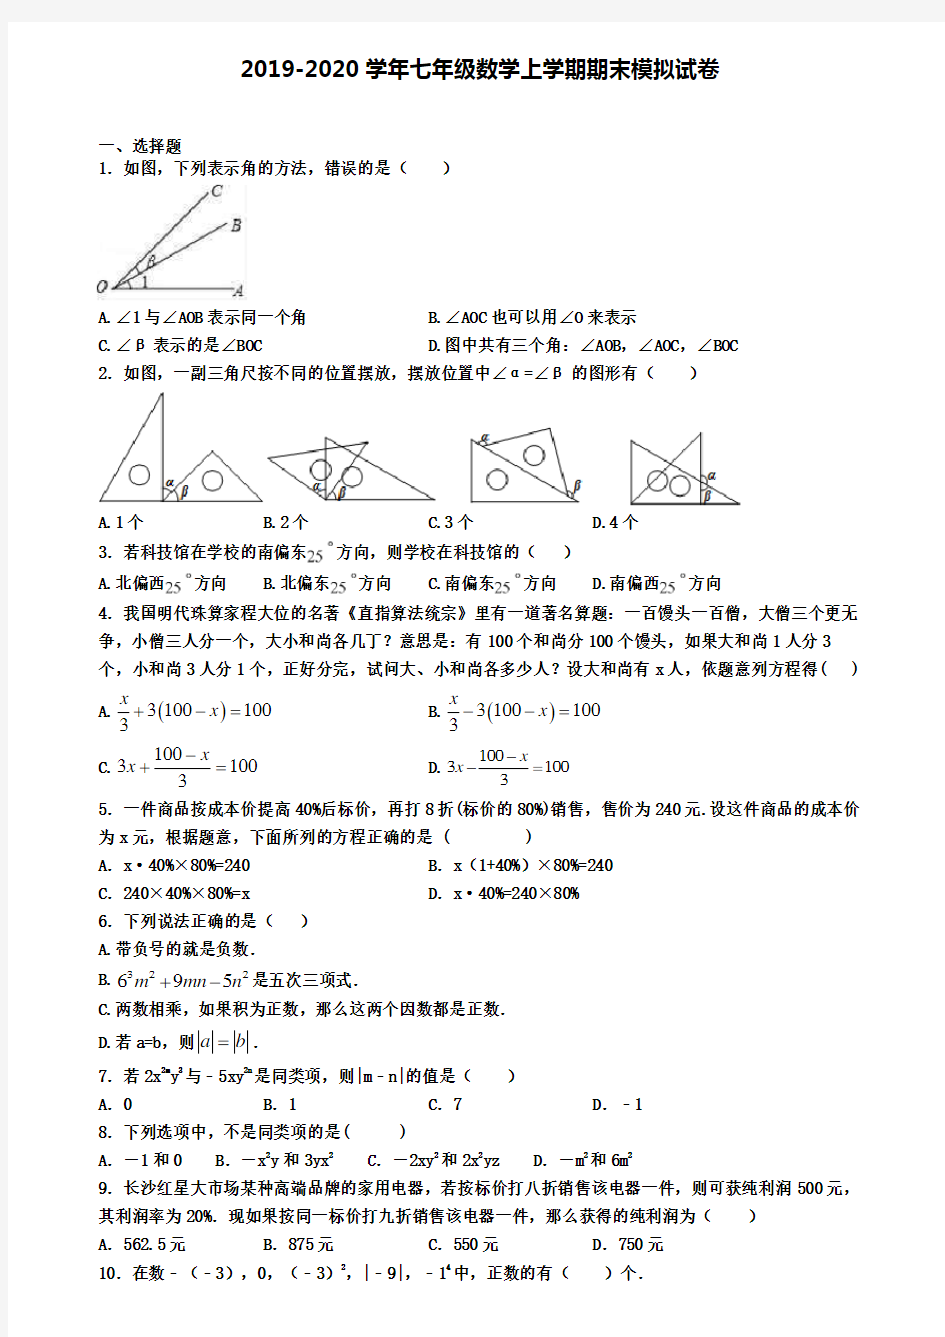 【15份试卷合集】上海市静安区2019-2020学年数学初一上期末考试试题